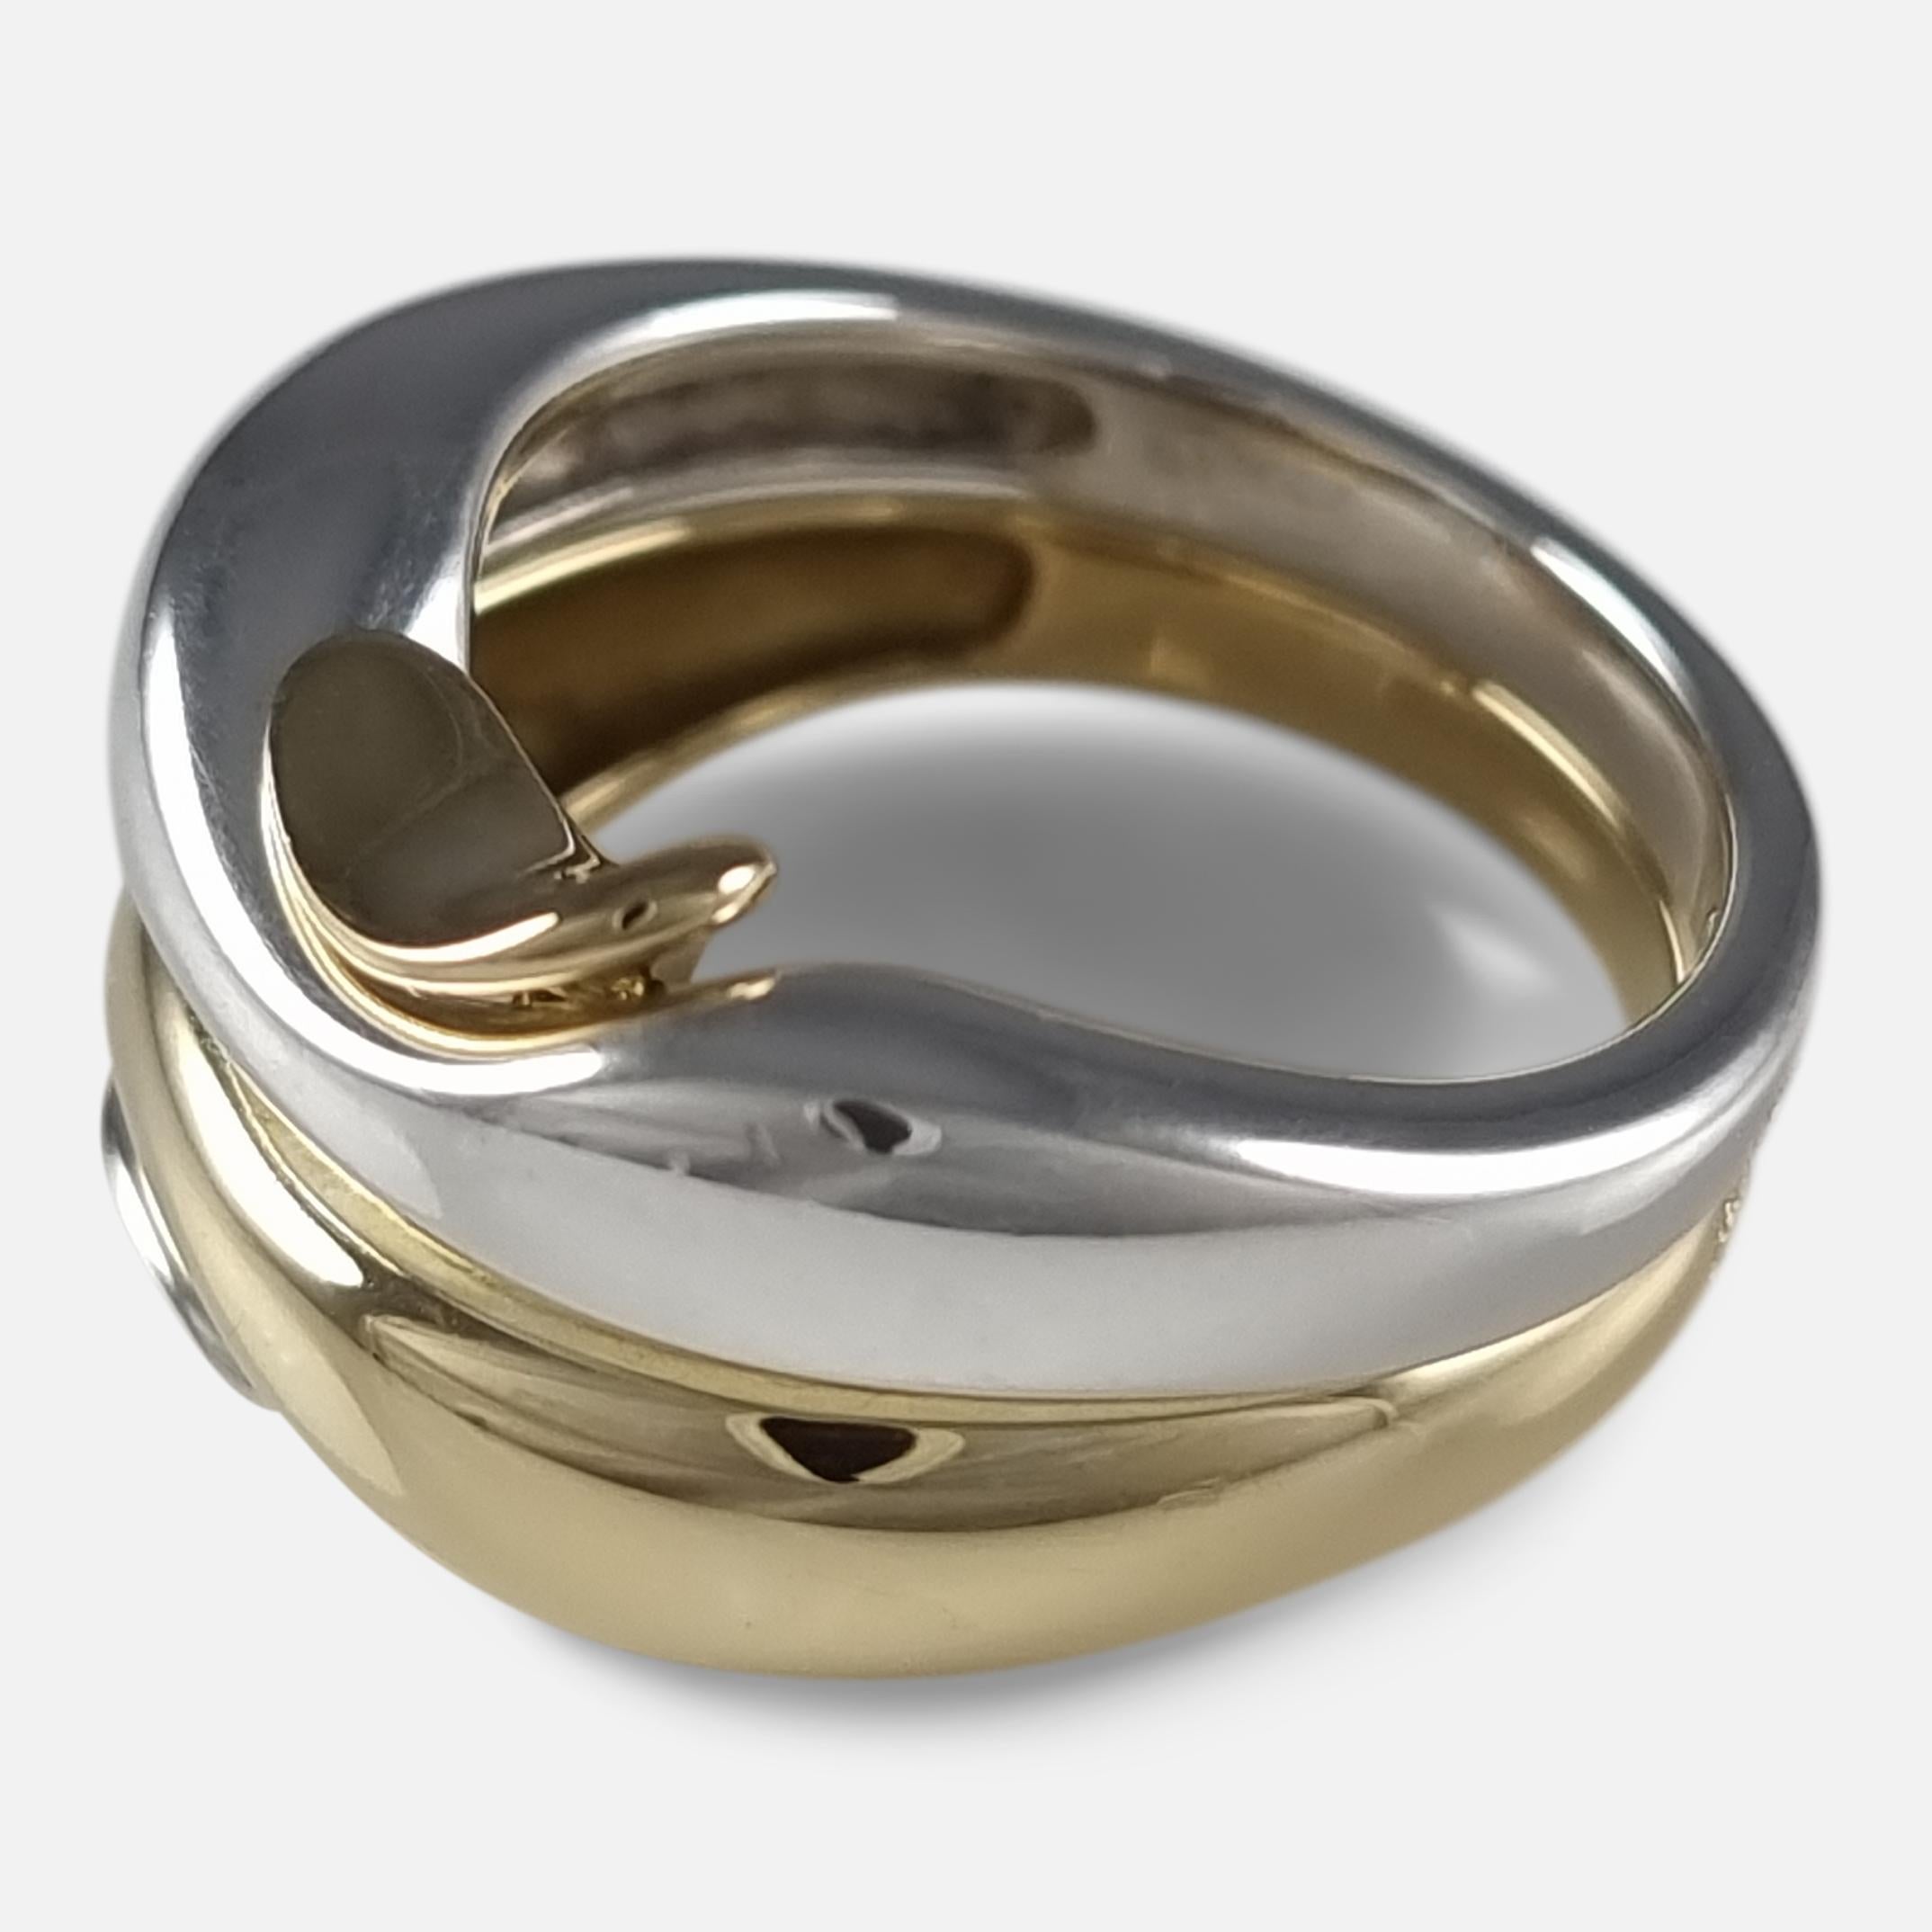 George Jensen 18ct Gold & Silver Ring, Minas Spiridis 2